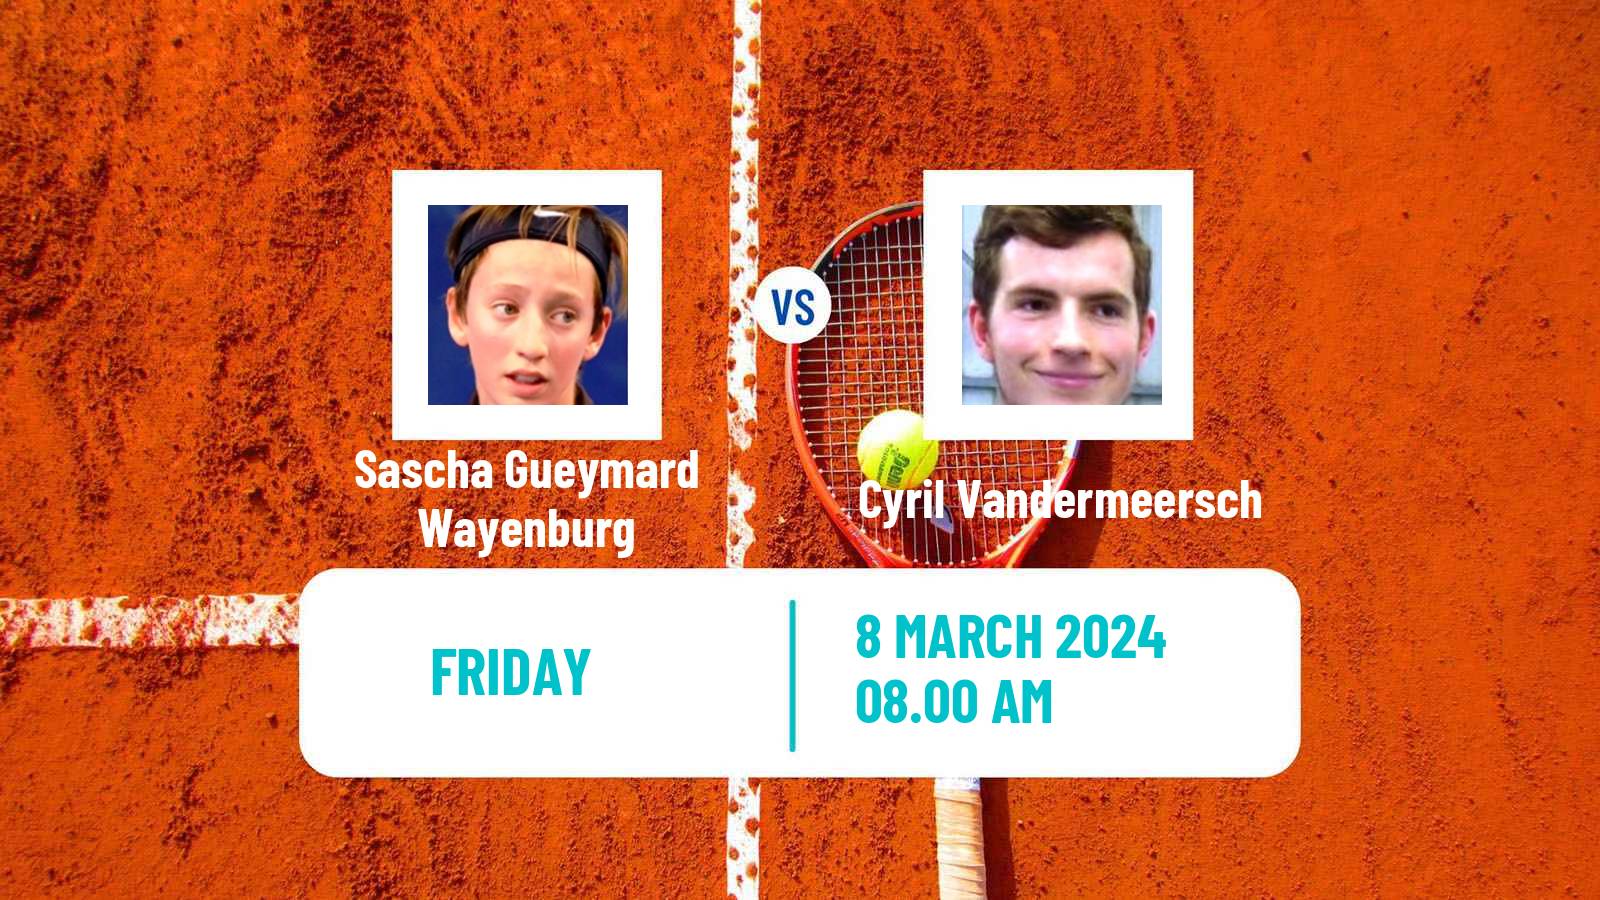 Tennis ITF M15 Poitiers Men Sascha Gueymard Wayenburg - Cyril Vandermeersch